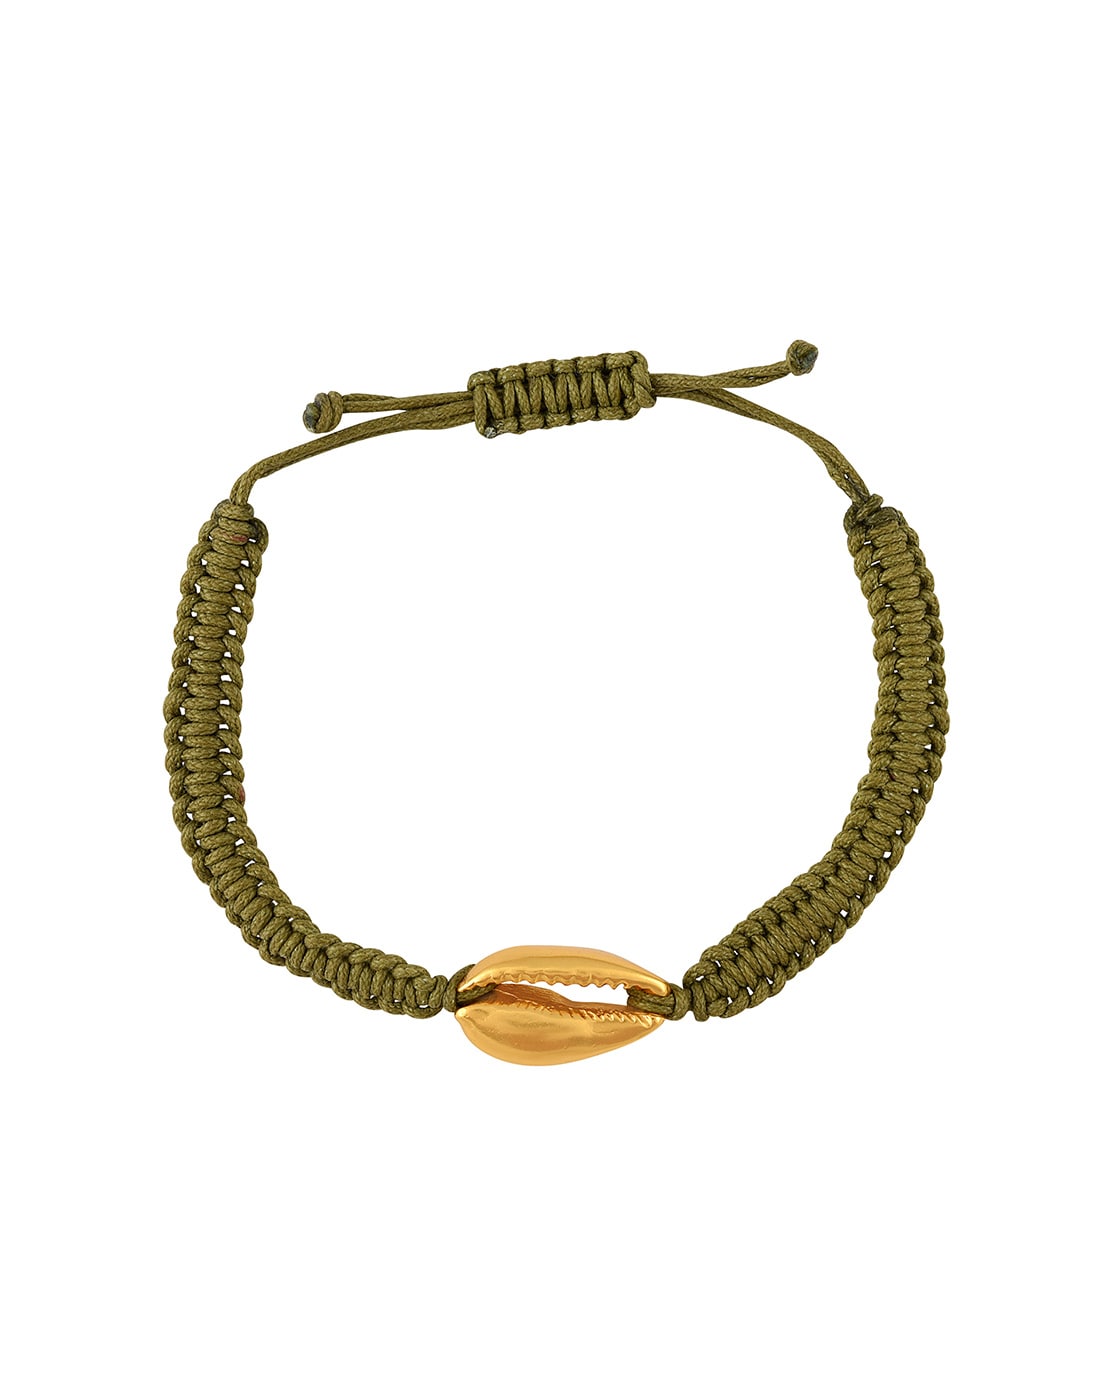 Gold Fill Seashell Chain Bracelet – Queen Anne Frame